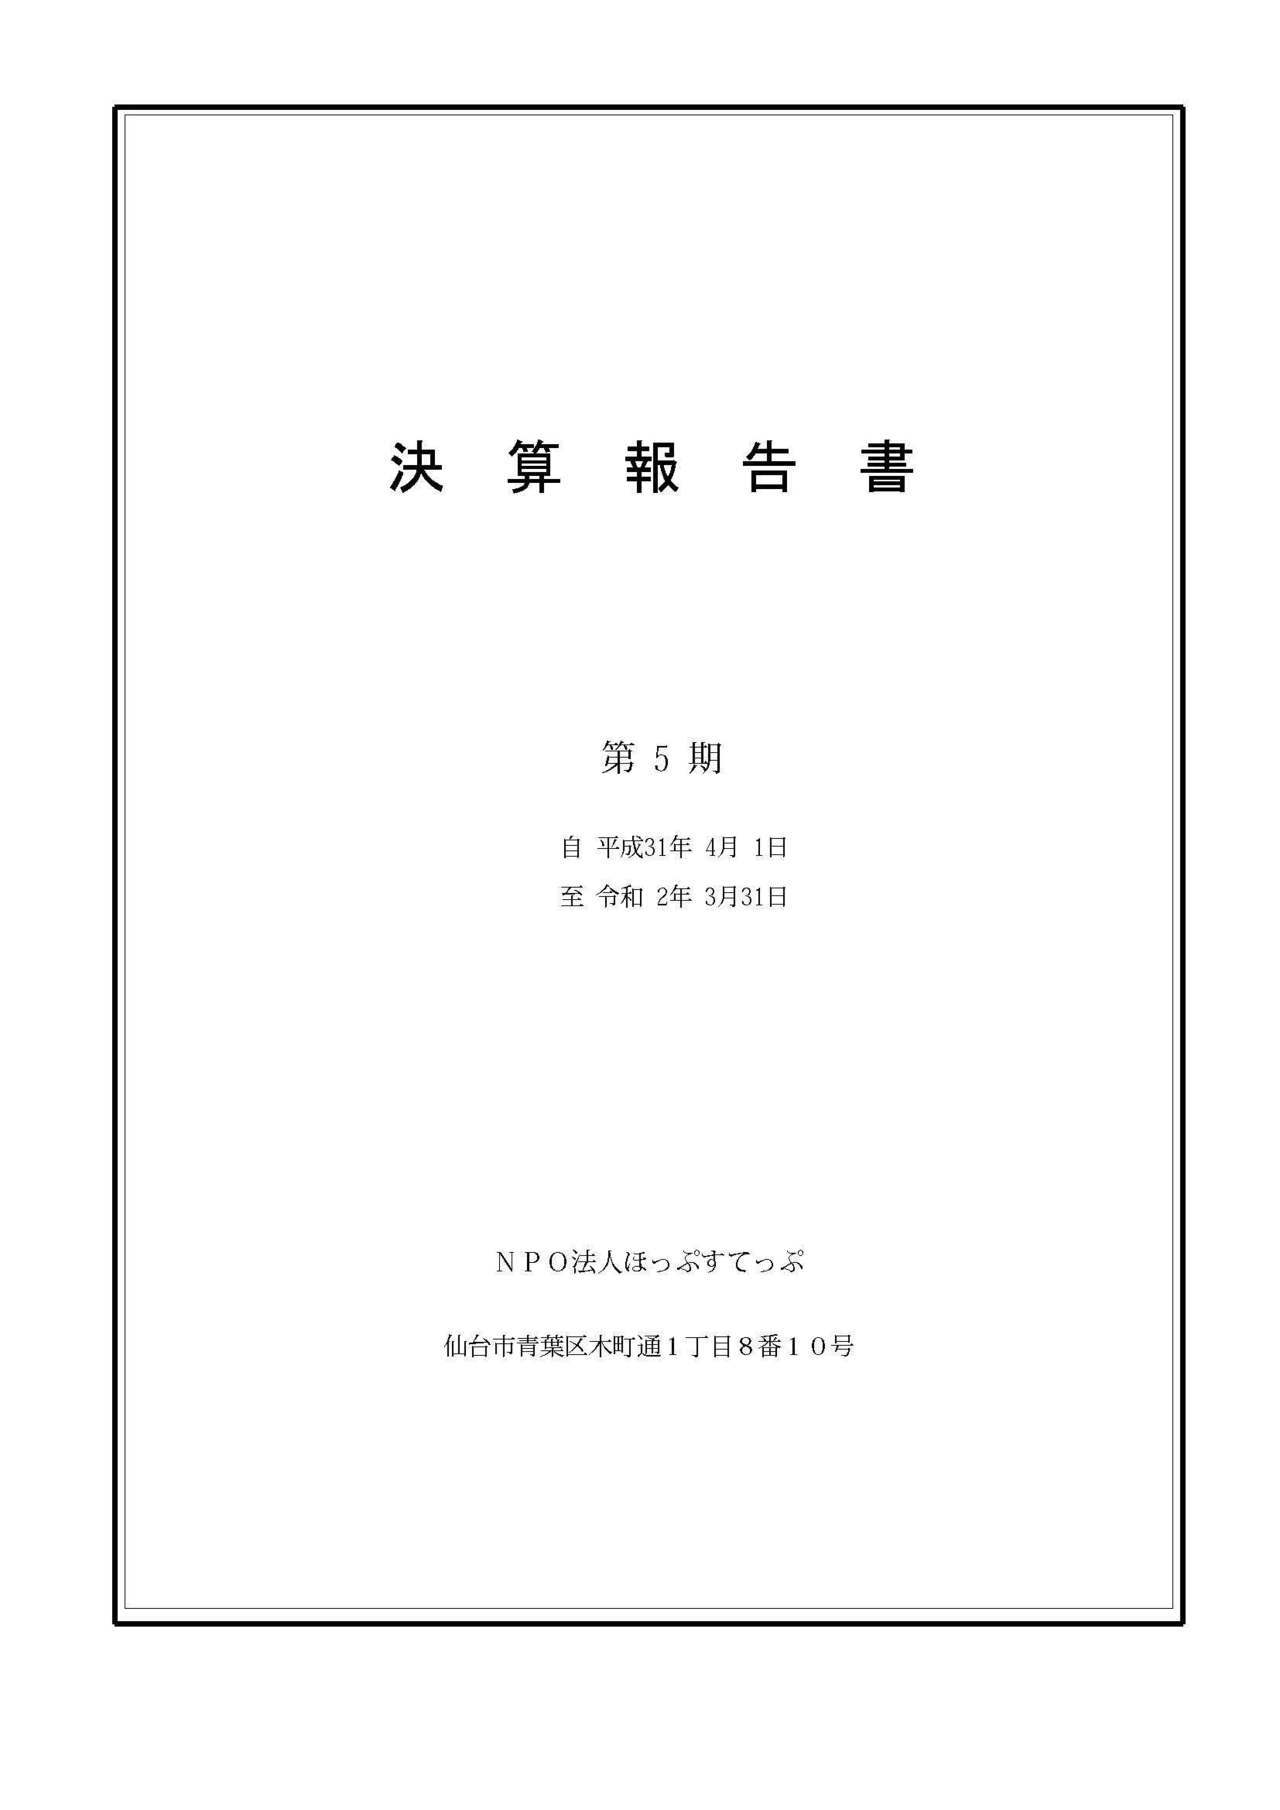 第5期決算報告書(2019.4〜2020.3)_ページ_1.jpg